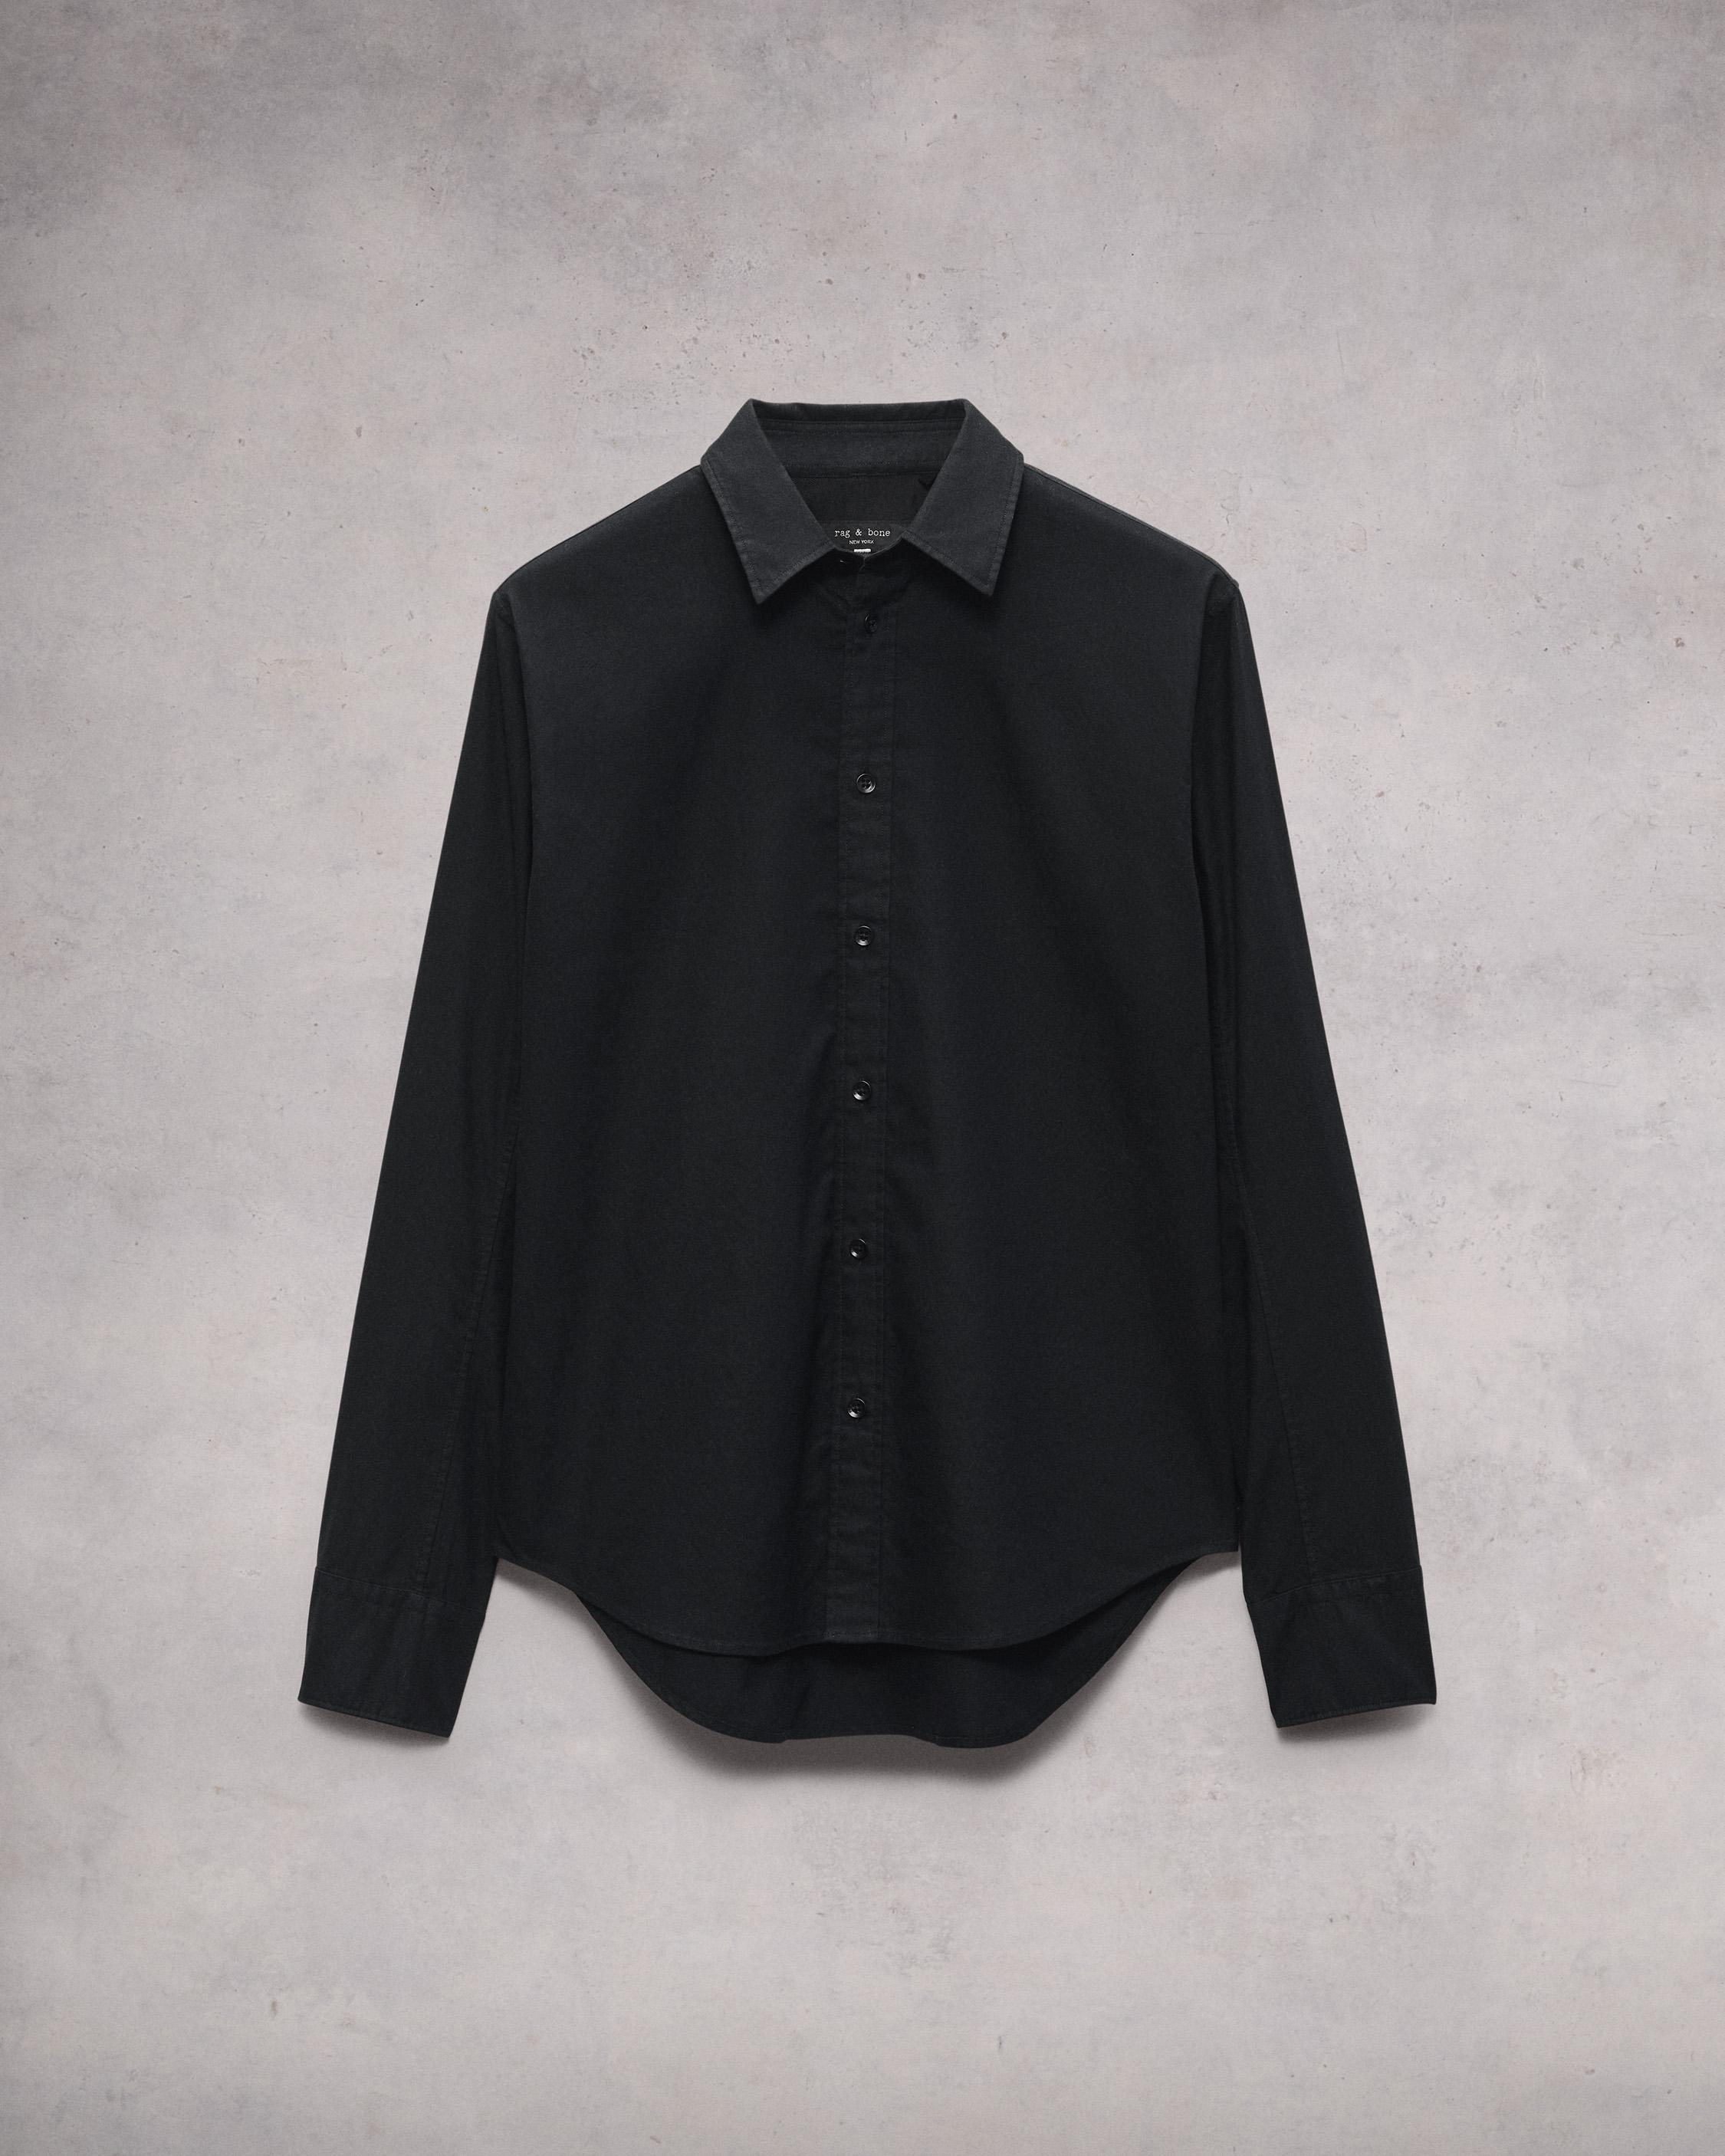 Women's Black Oxford Button-Down Shirt